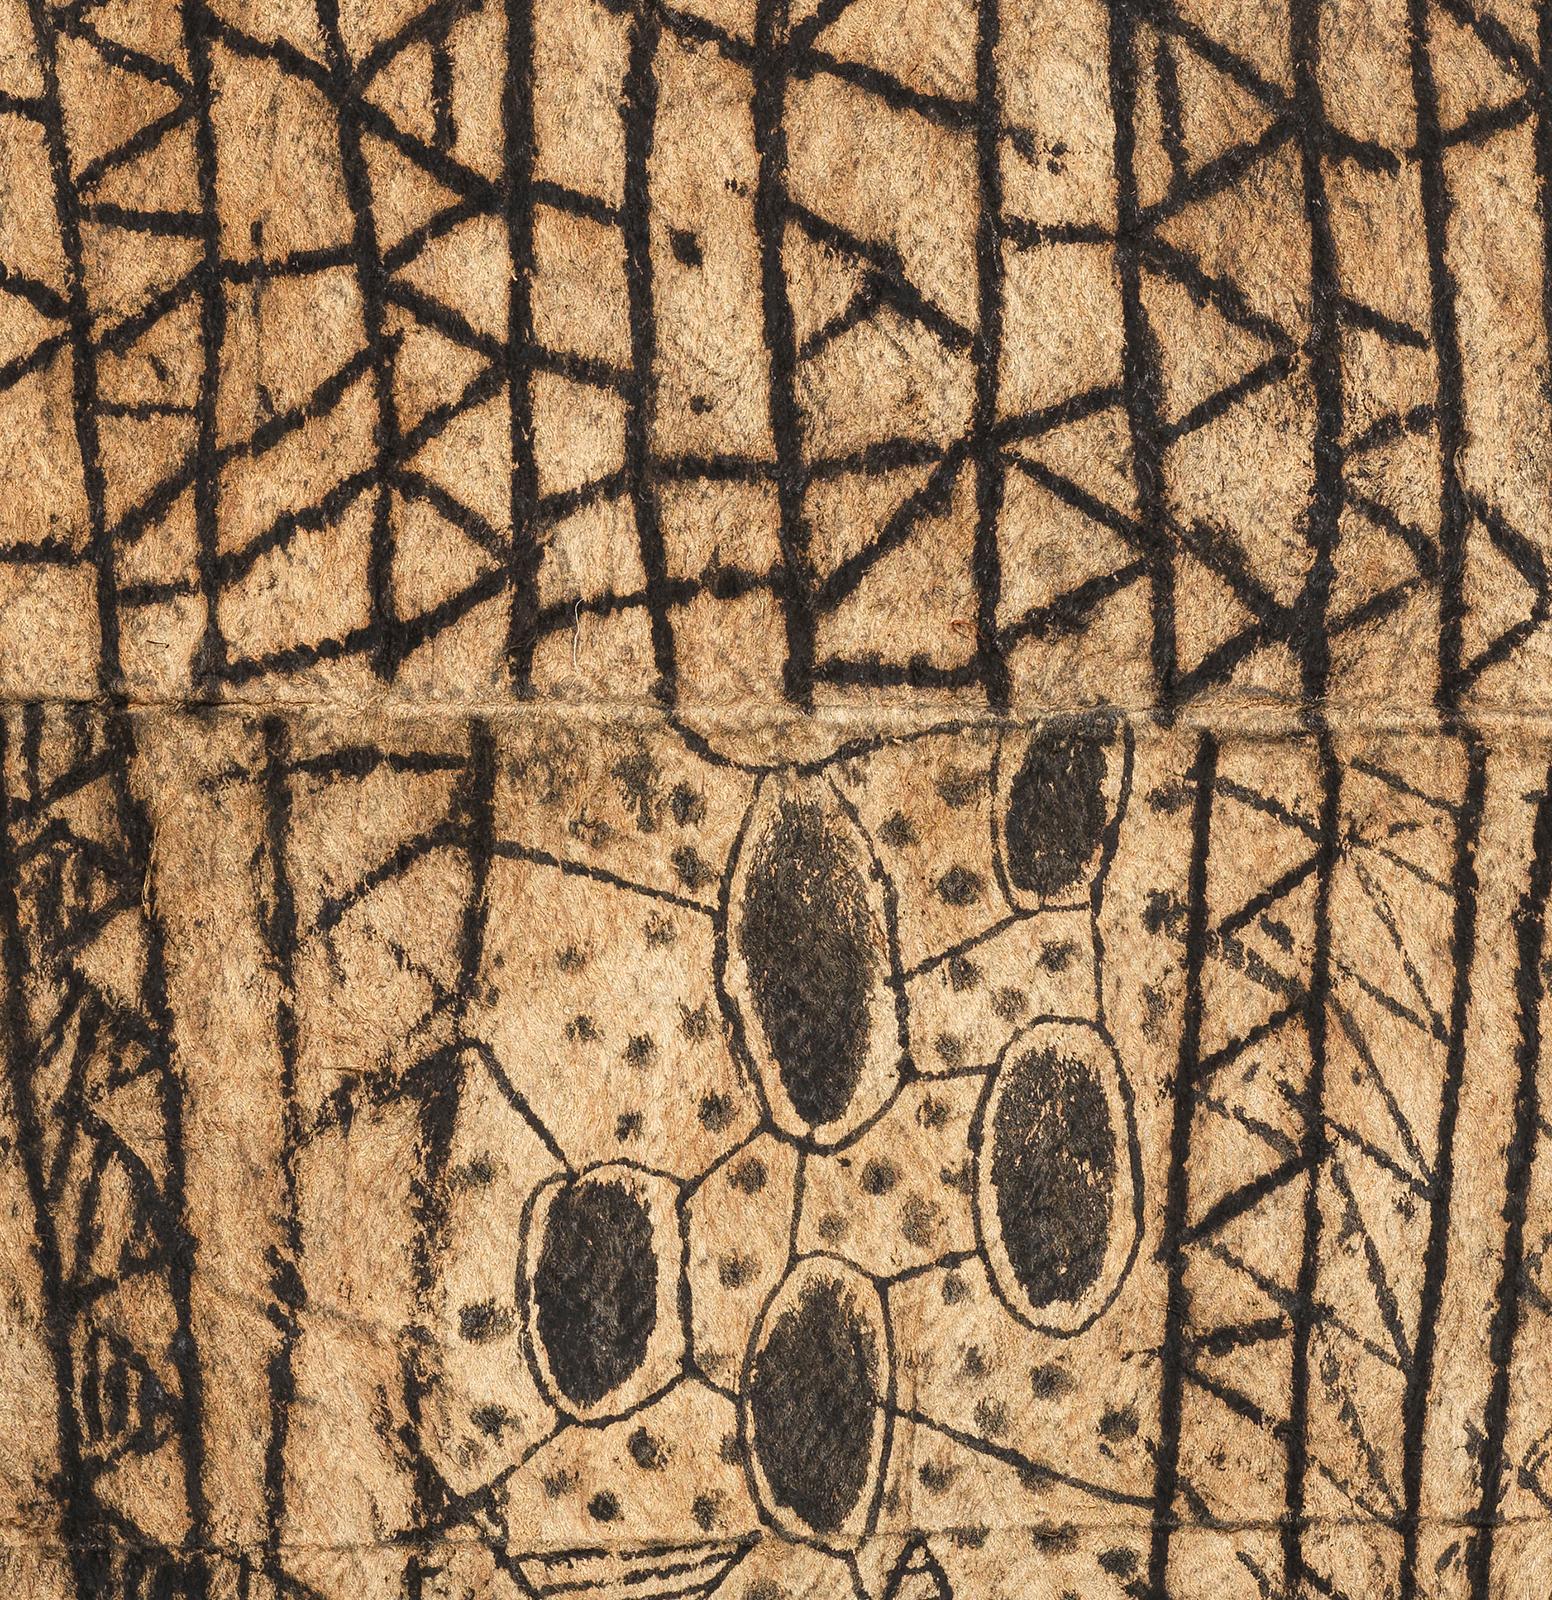 Peinture Mbuti sur tissu d'écorce
Forêt d'Ituri, RD Congo
20ème siècle
0,54 x 0,75m (1'9″ x 2'6″)

Les géométries biomorphiques et linéaires excentriques des tissus d'écorce Mbuti, peints par les femmes, sont des réponses impressionnistes aux